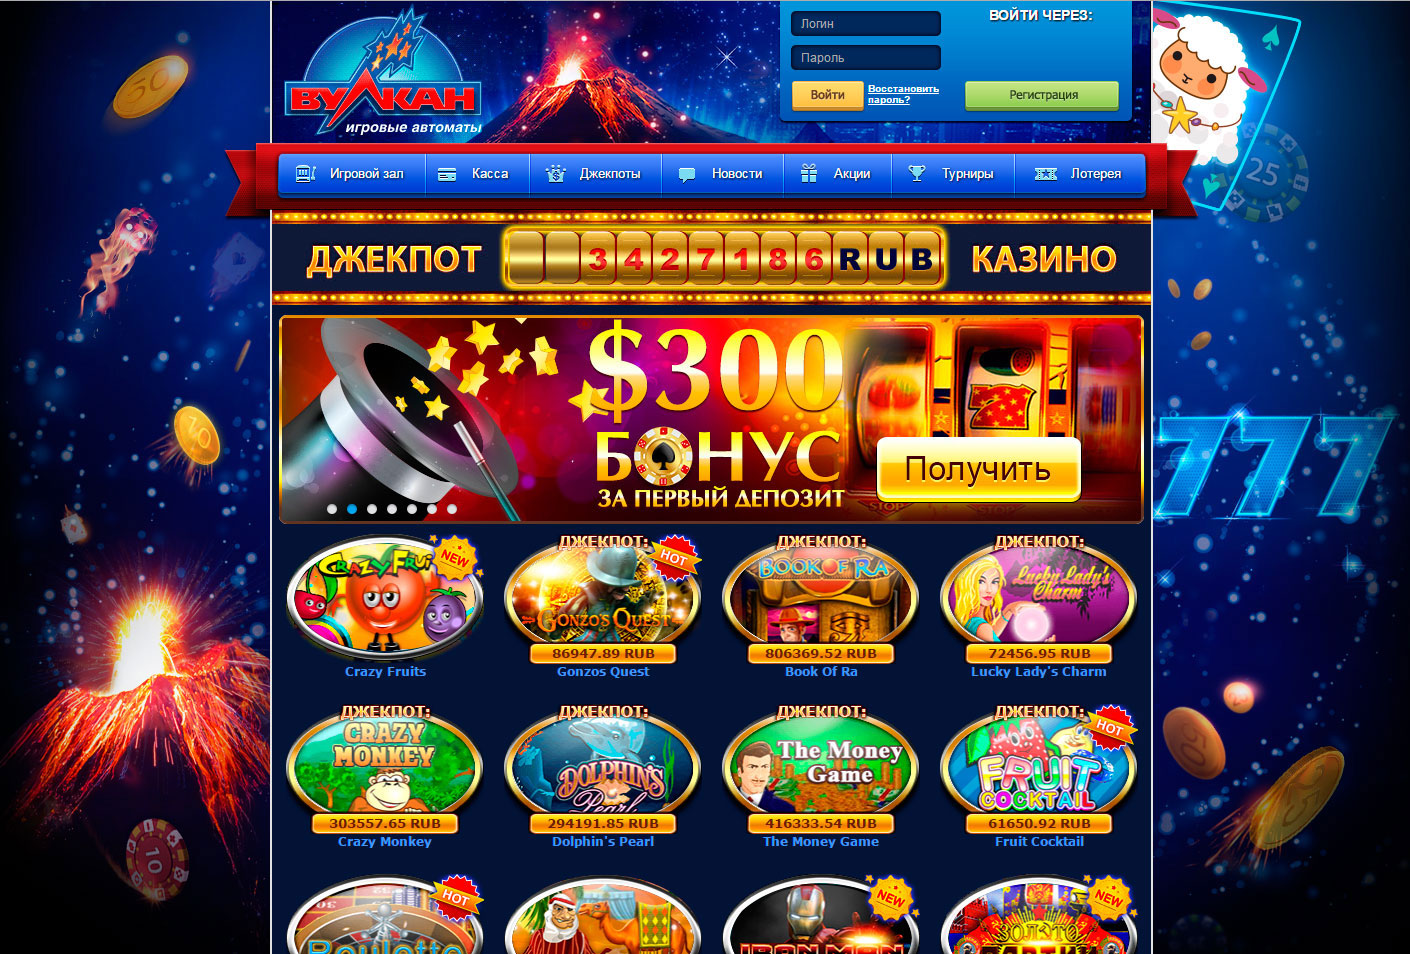 Вулкан казино онлайн официальный сайт вся правда о казино вулкан в интернете отзывы